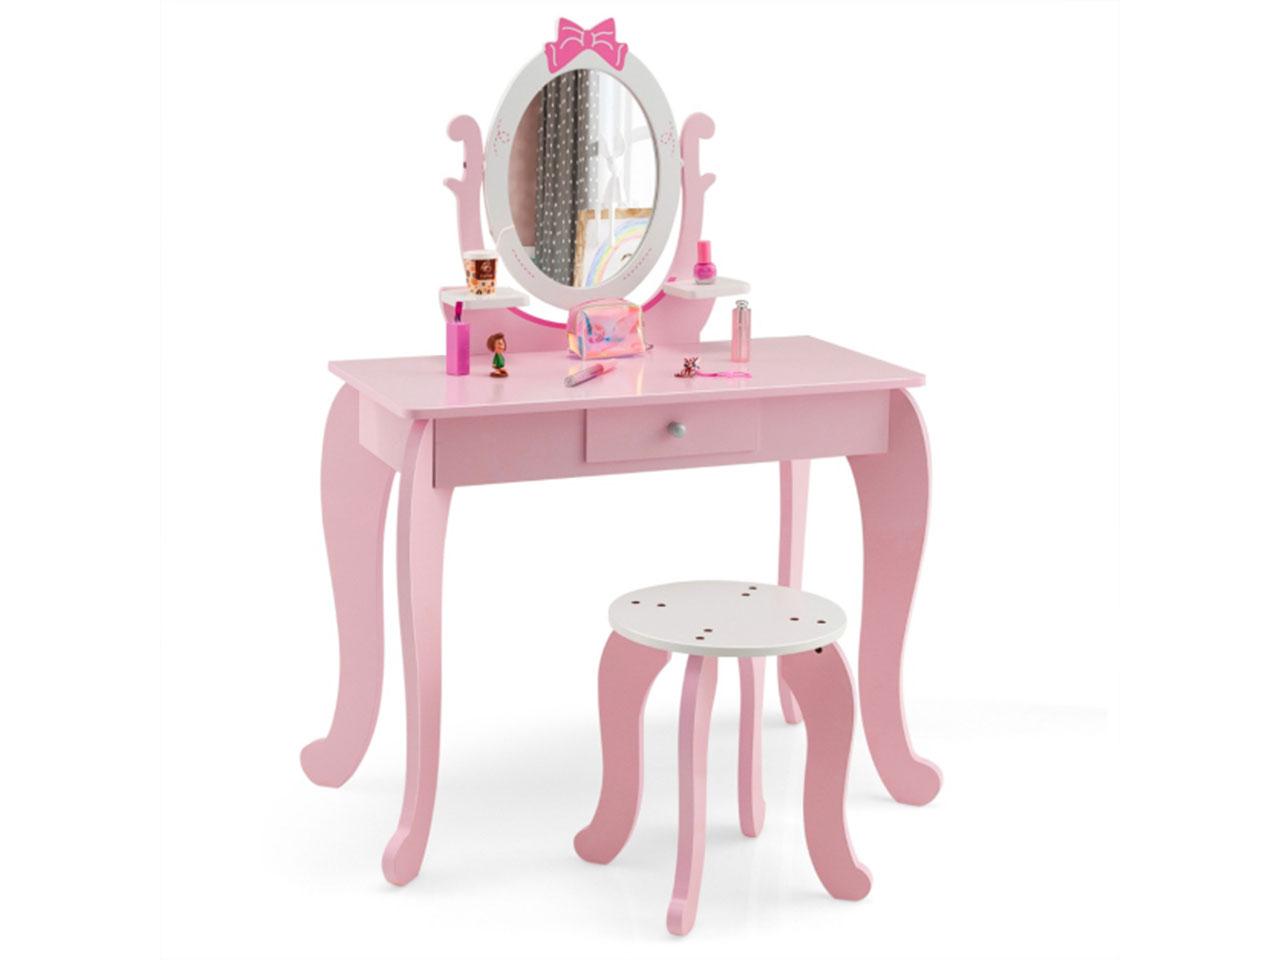 Dětský toaletní stolek HY10089PI, 2v1, s taburetem, pro děti ve věku 3-7 let, růžová + bílá